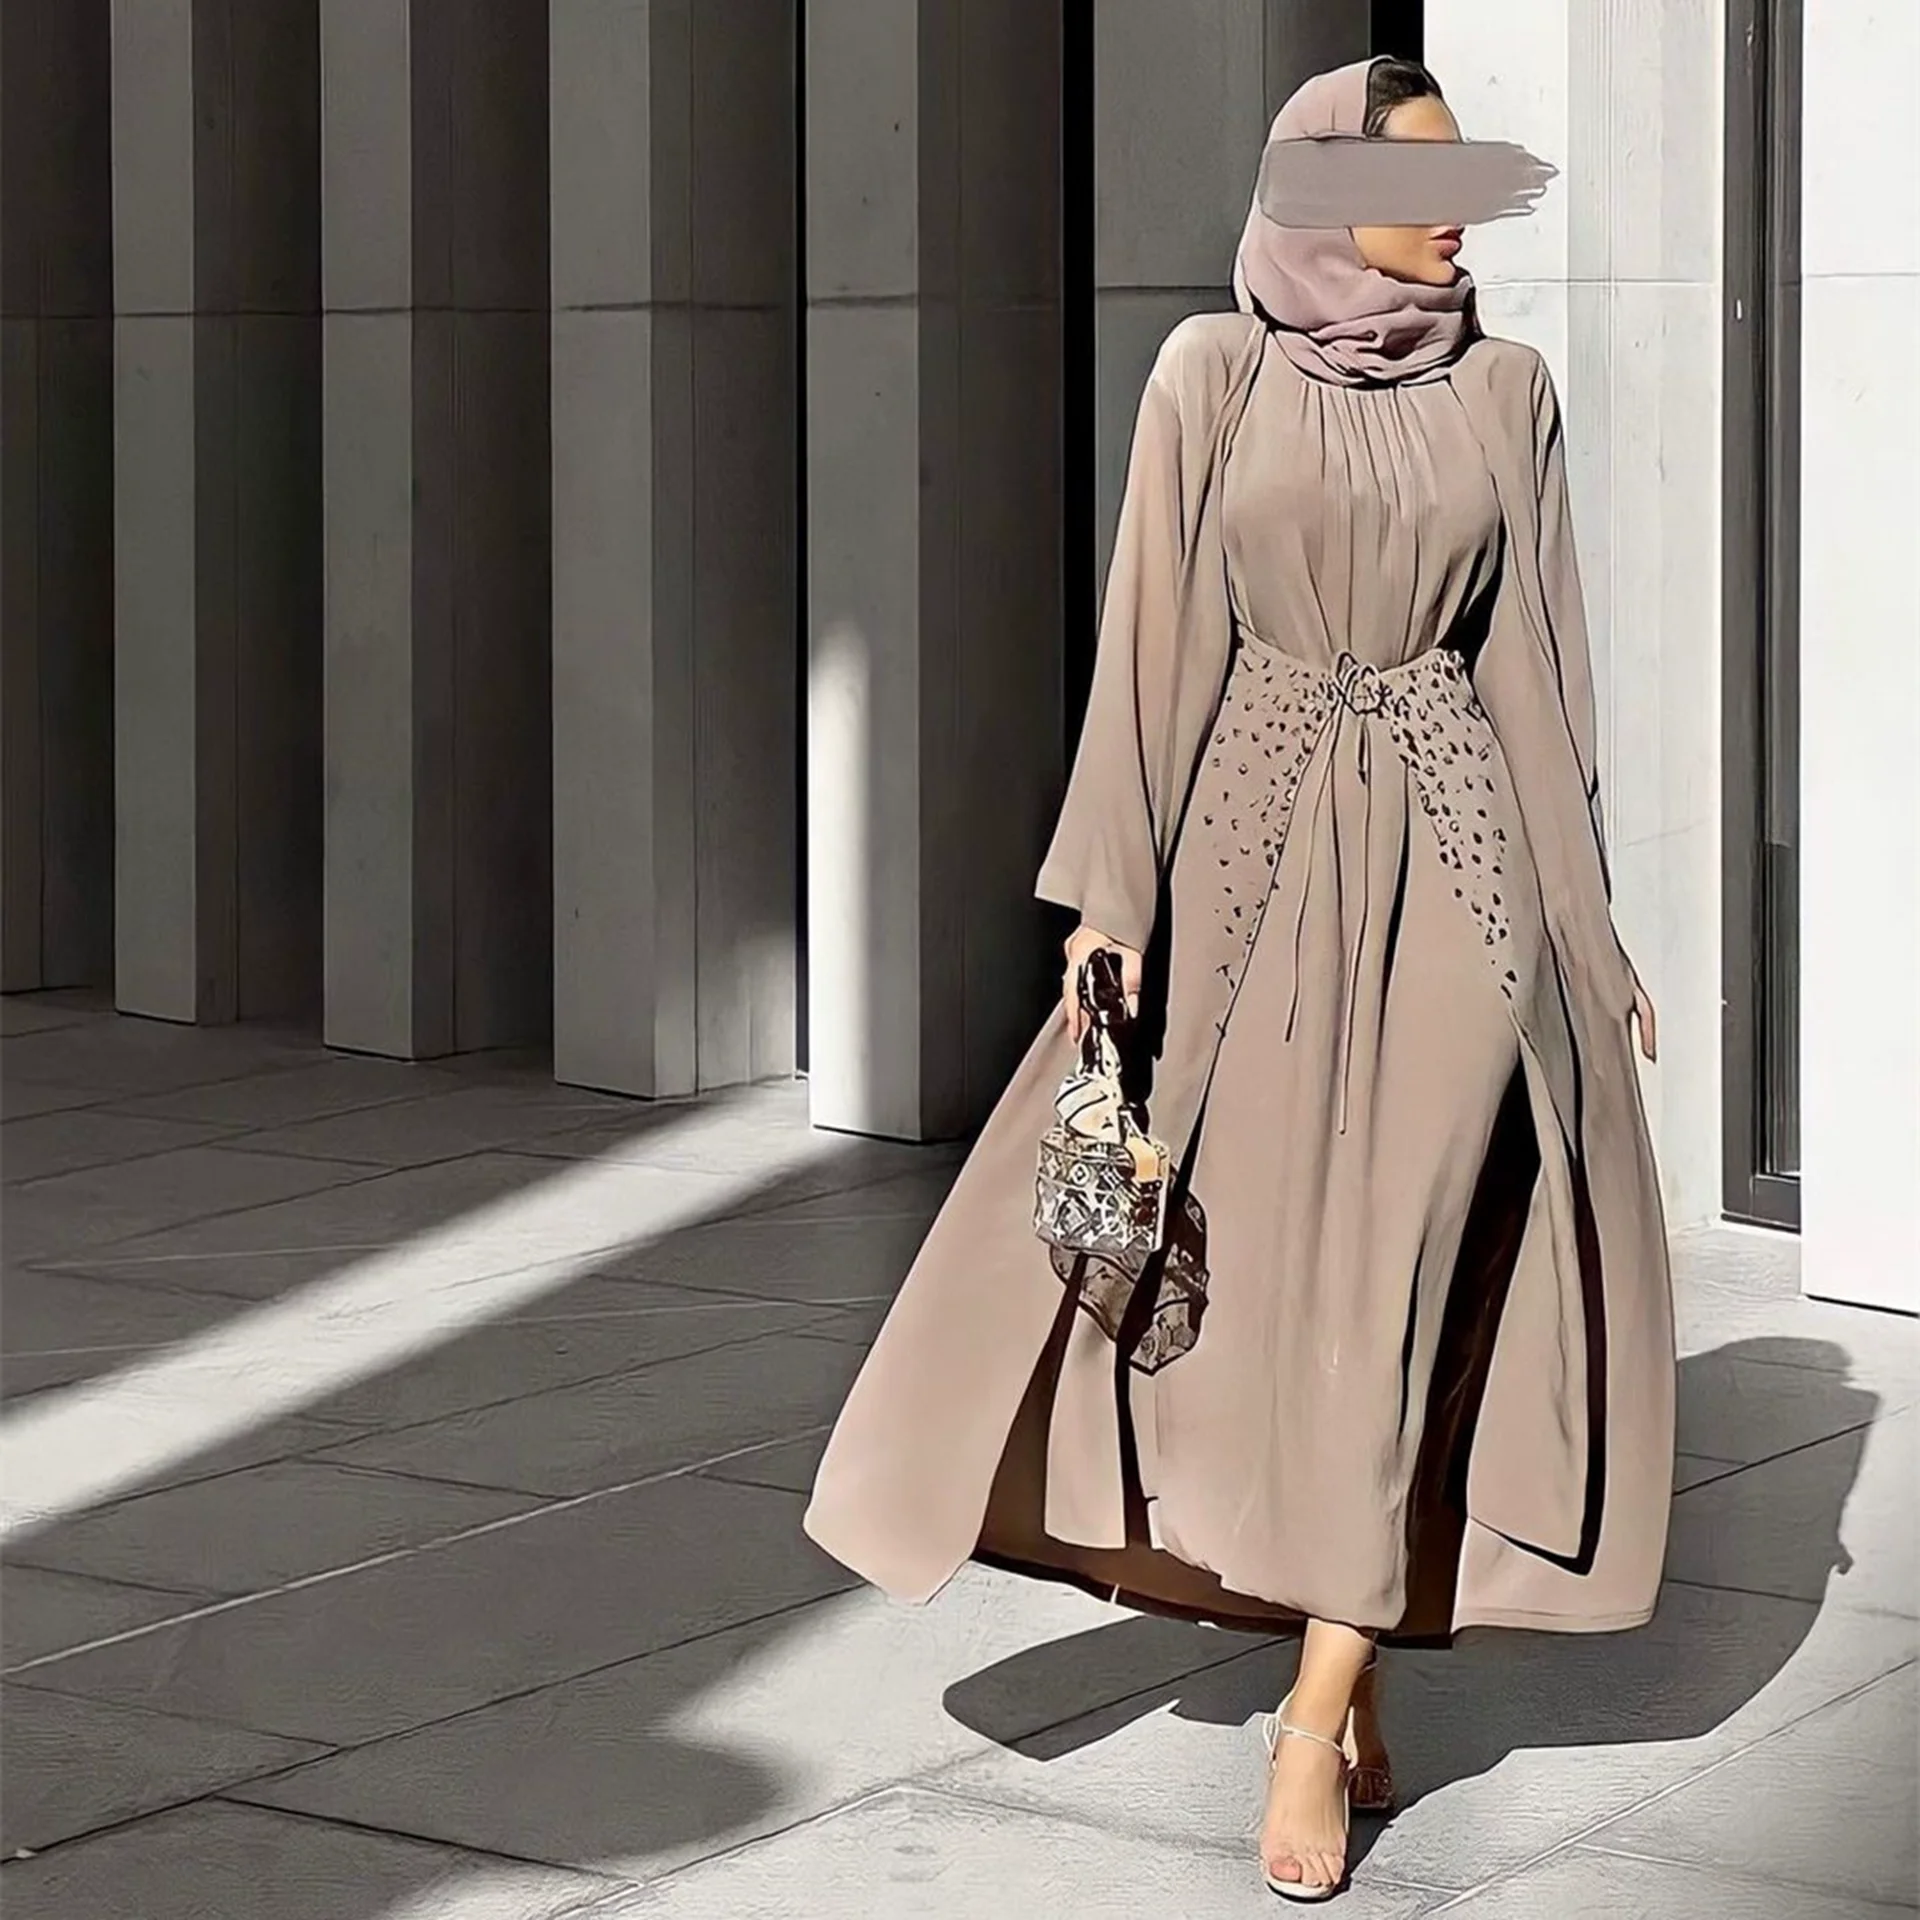 מלאכת-יד חרוזים 3 חתיכה המוסלמים להגדיר התאמת הלבוש מקומט קרפ פתוח Abaya קימונו שרוול ארוך שמלה לעטוף את החצאית דובאי סתיו - 0